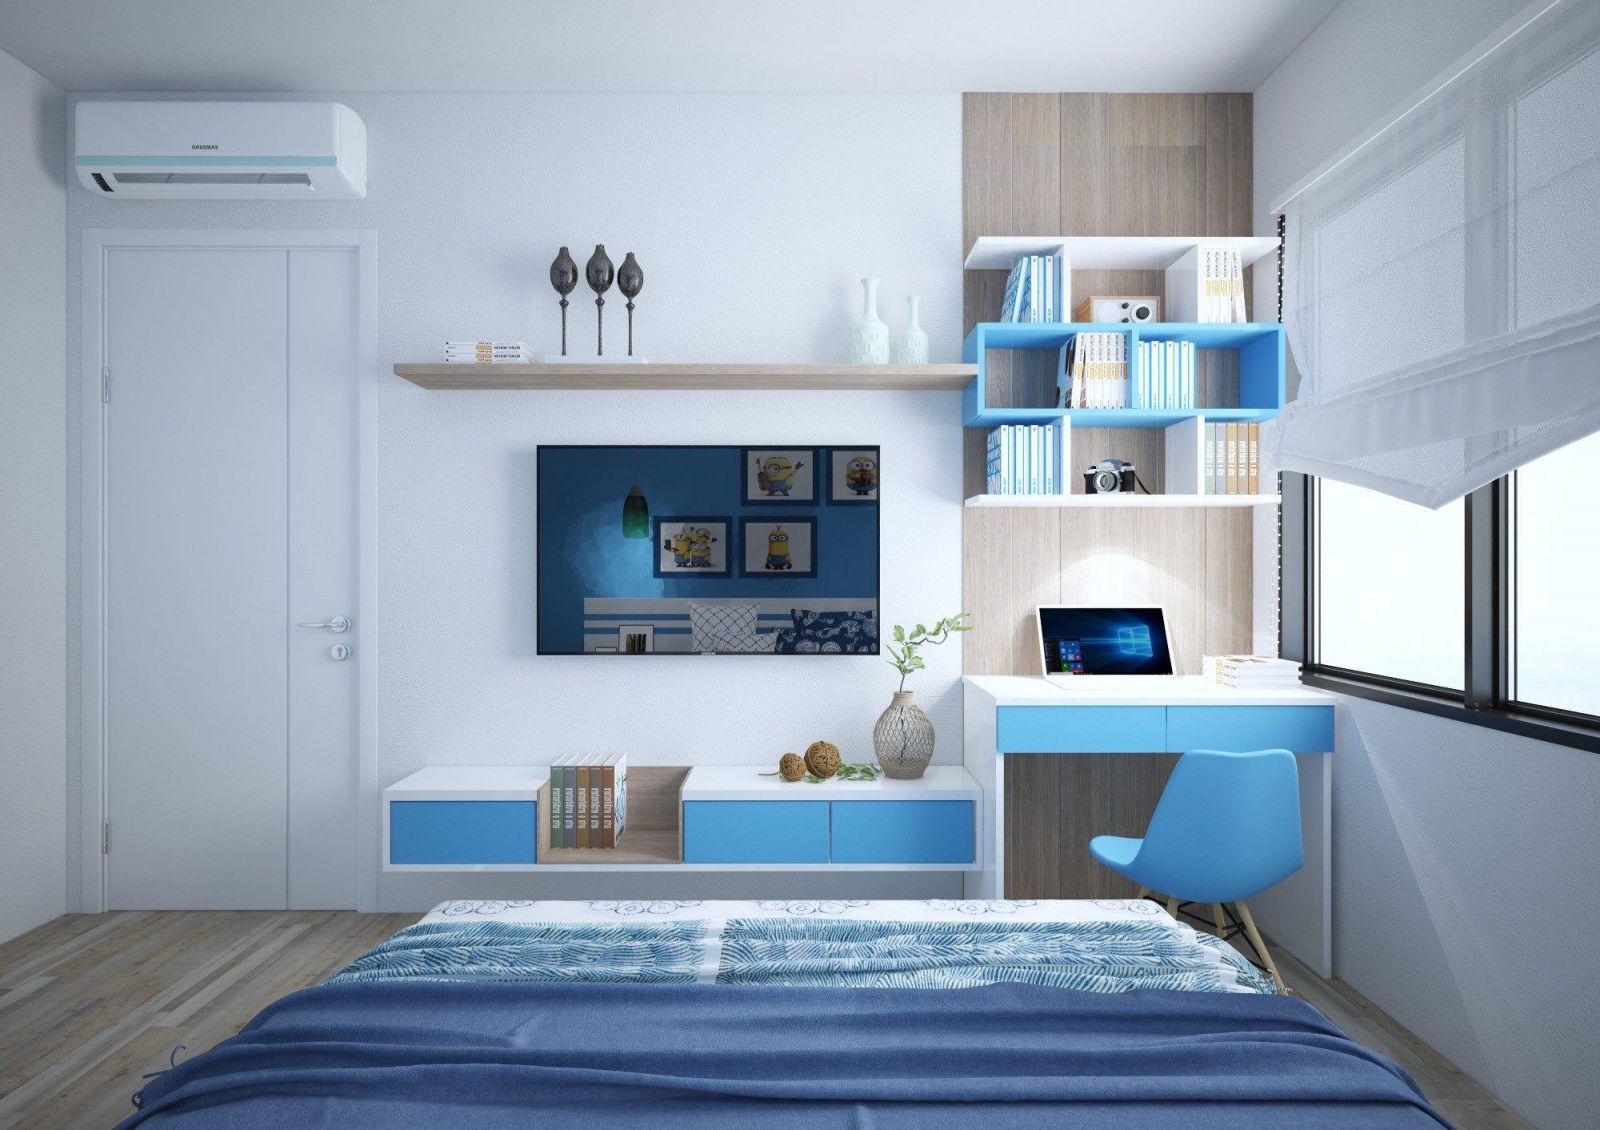 Mẫu thiết kế phòng ngủ bé trai màu xanh dương 